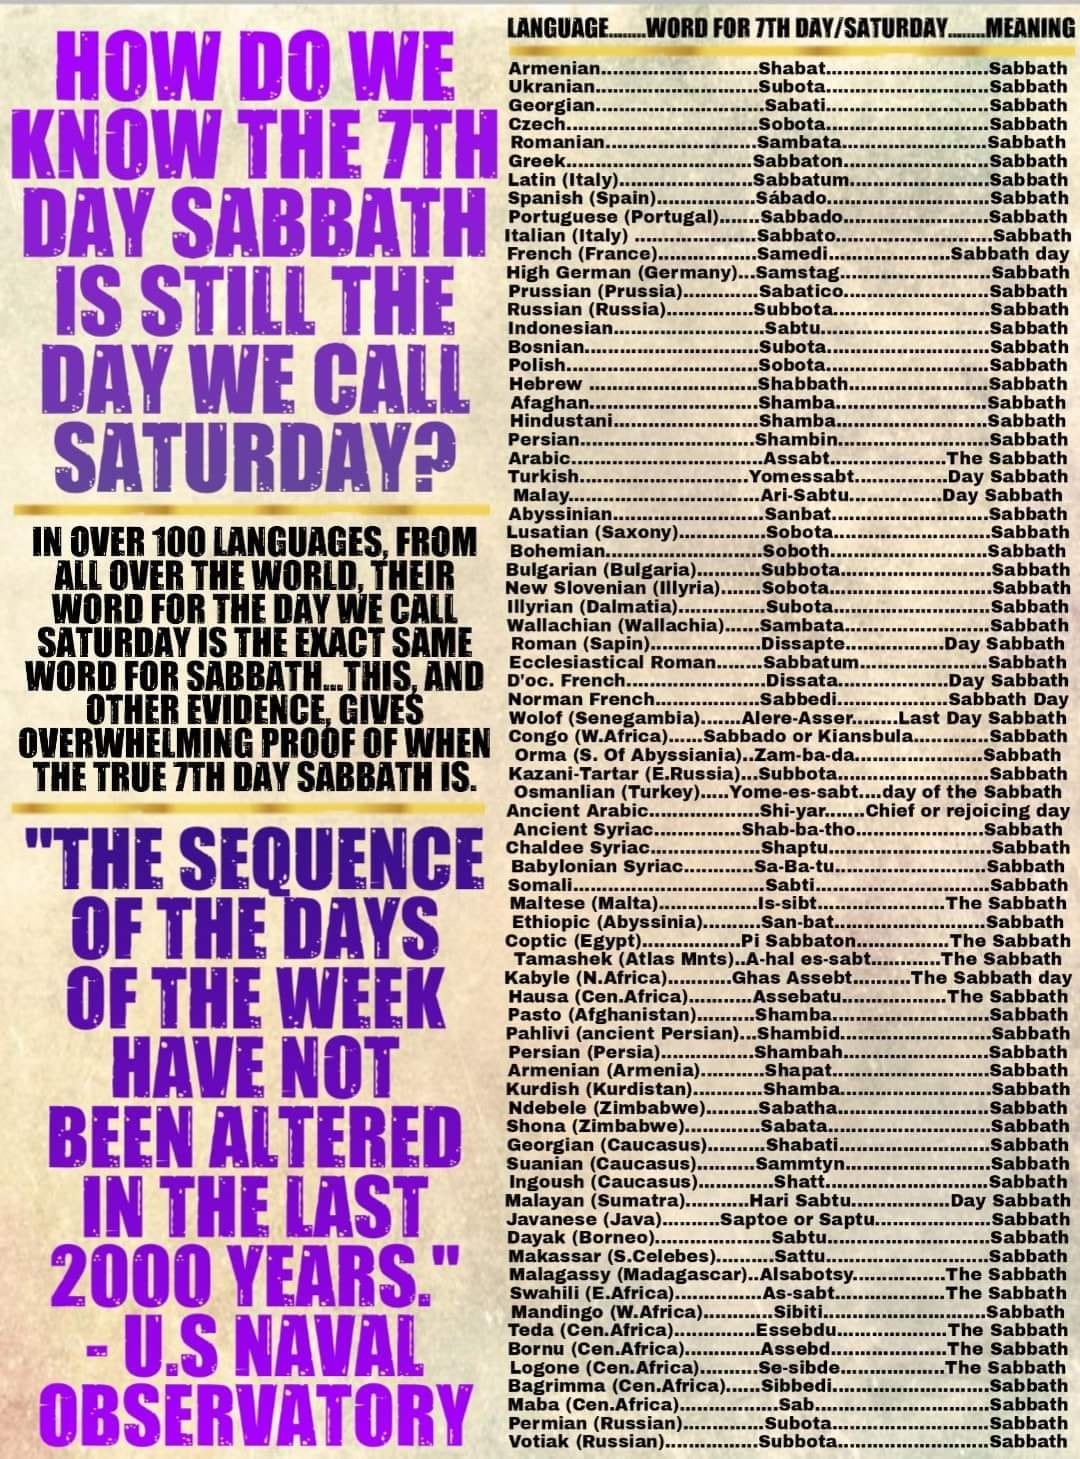 Lunar or Weekly Sabbath?